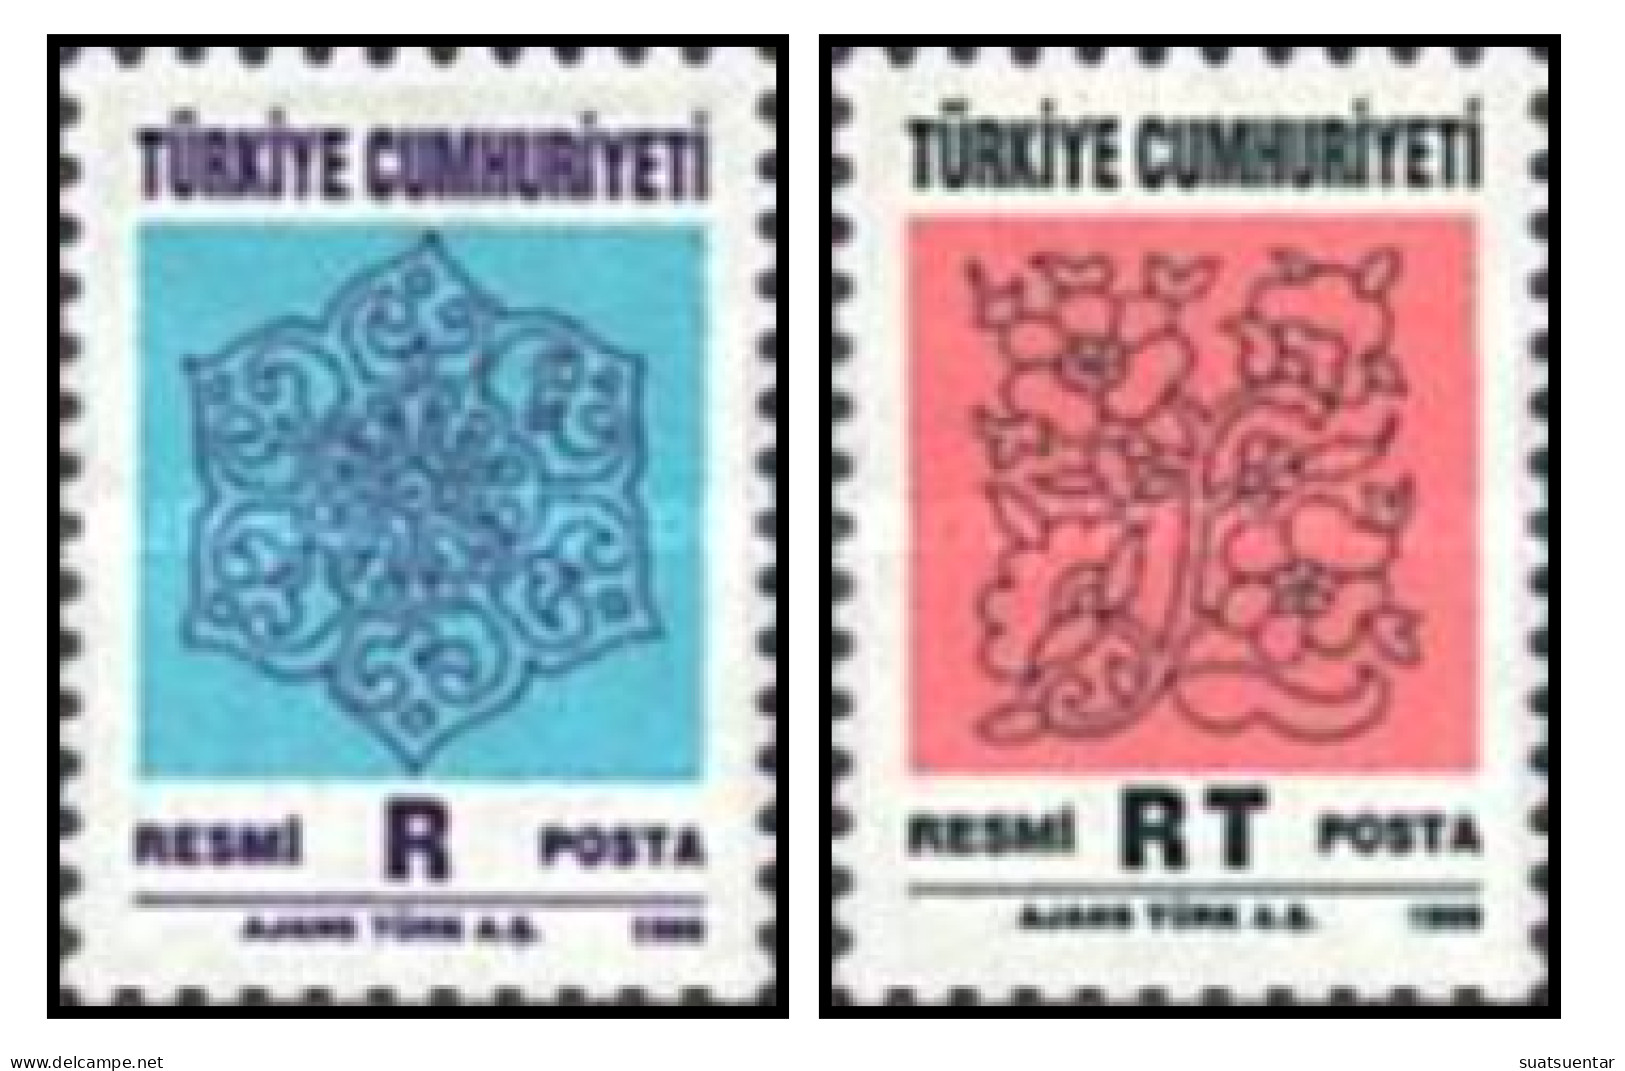 1999 Official Stamps - New Design MH - Sellos De Servicio